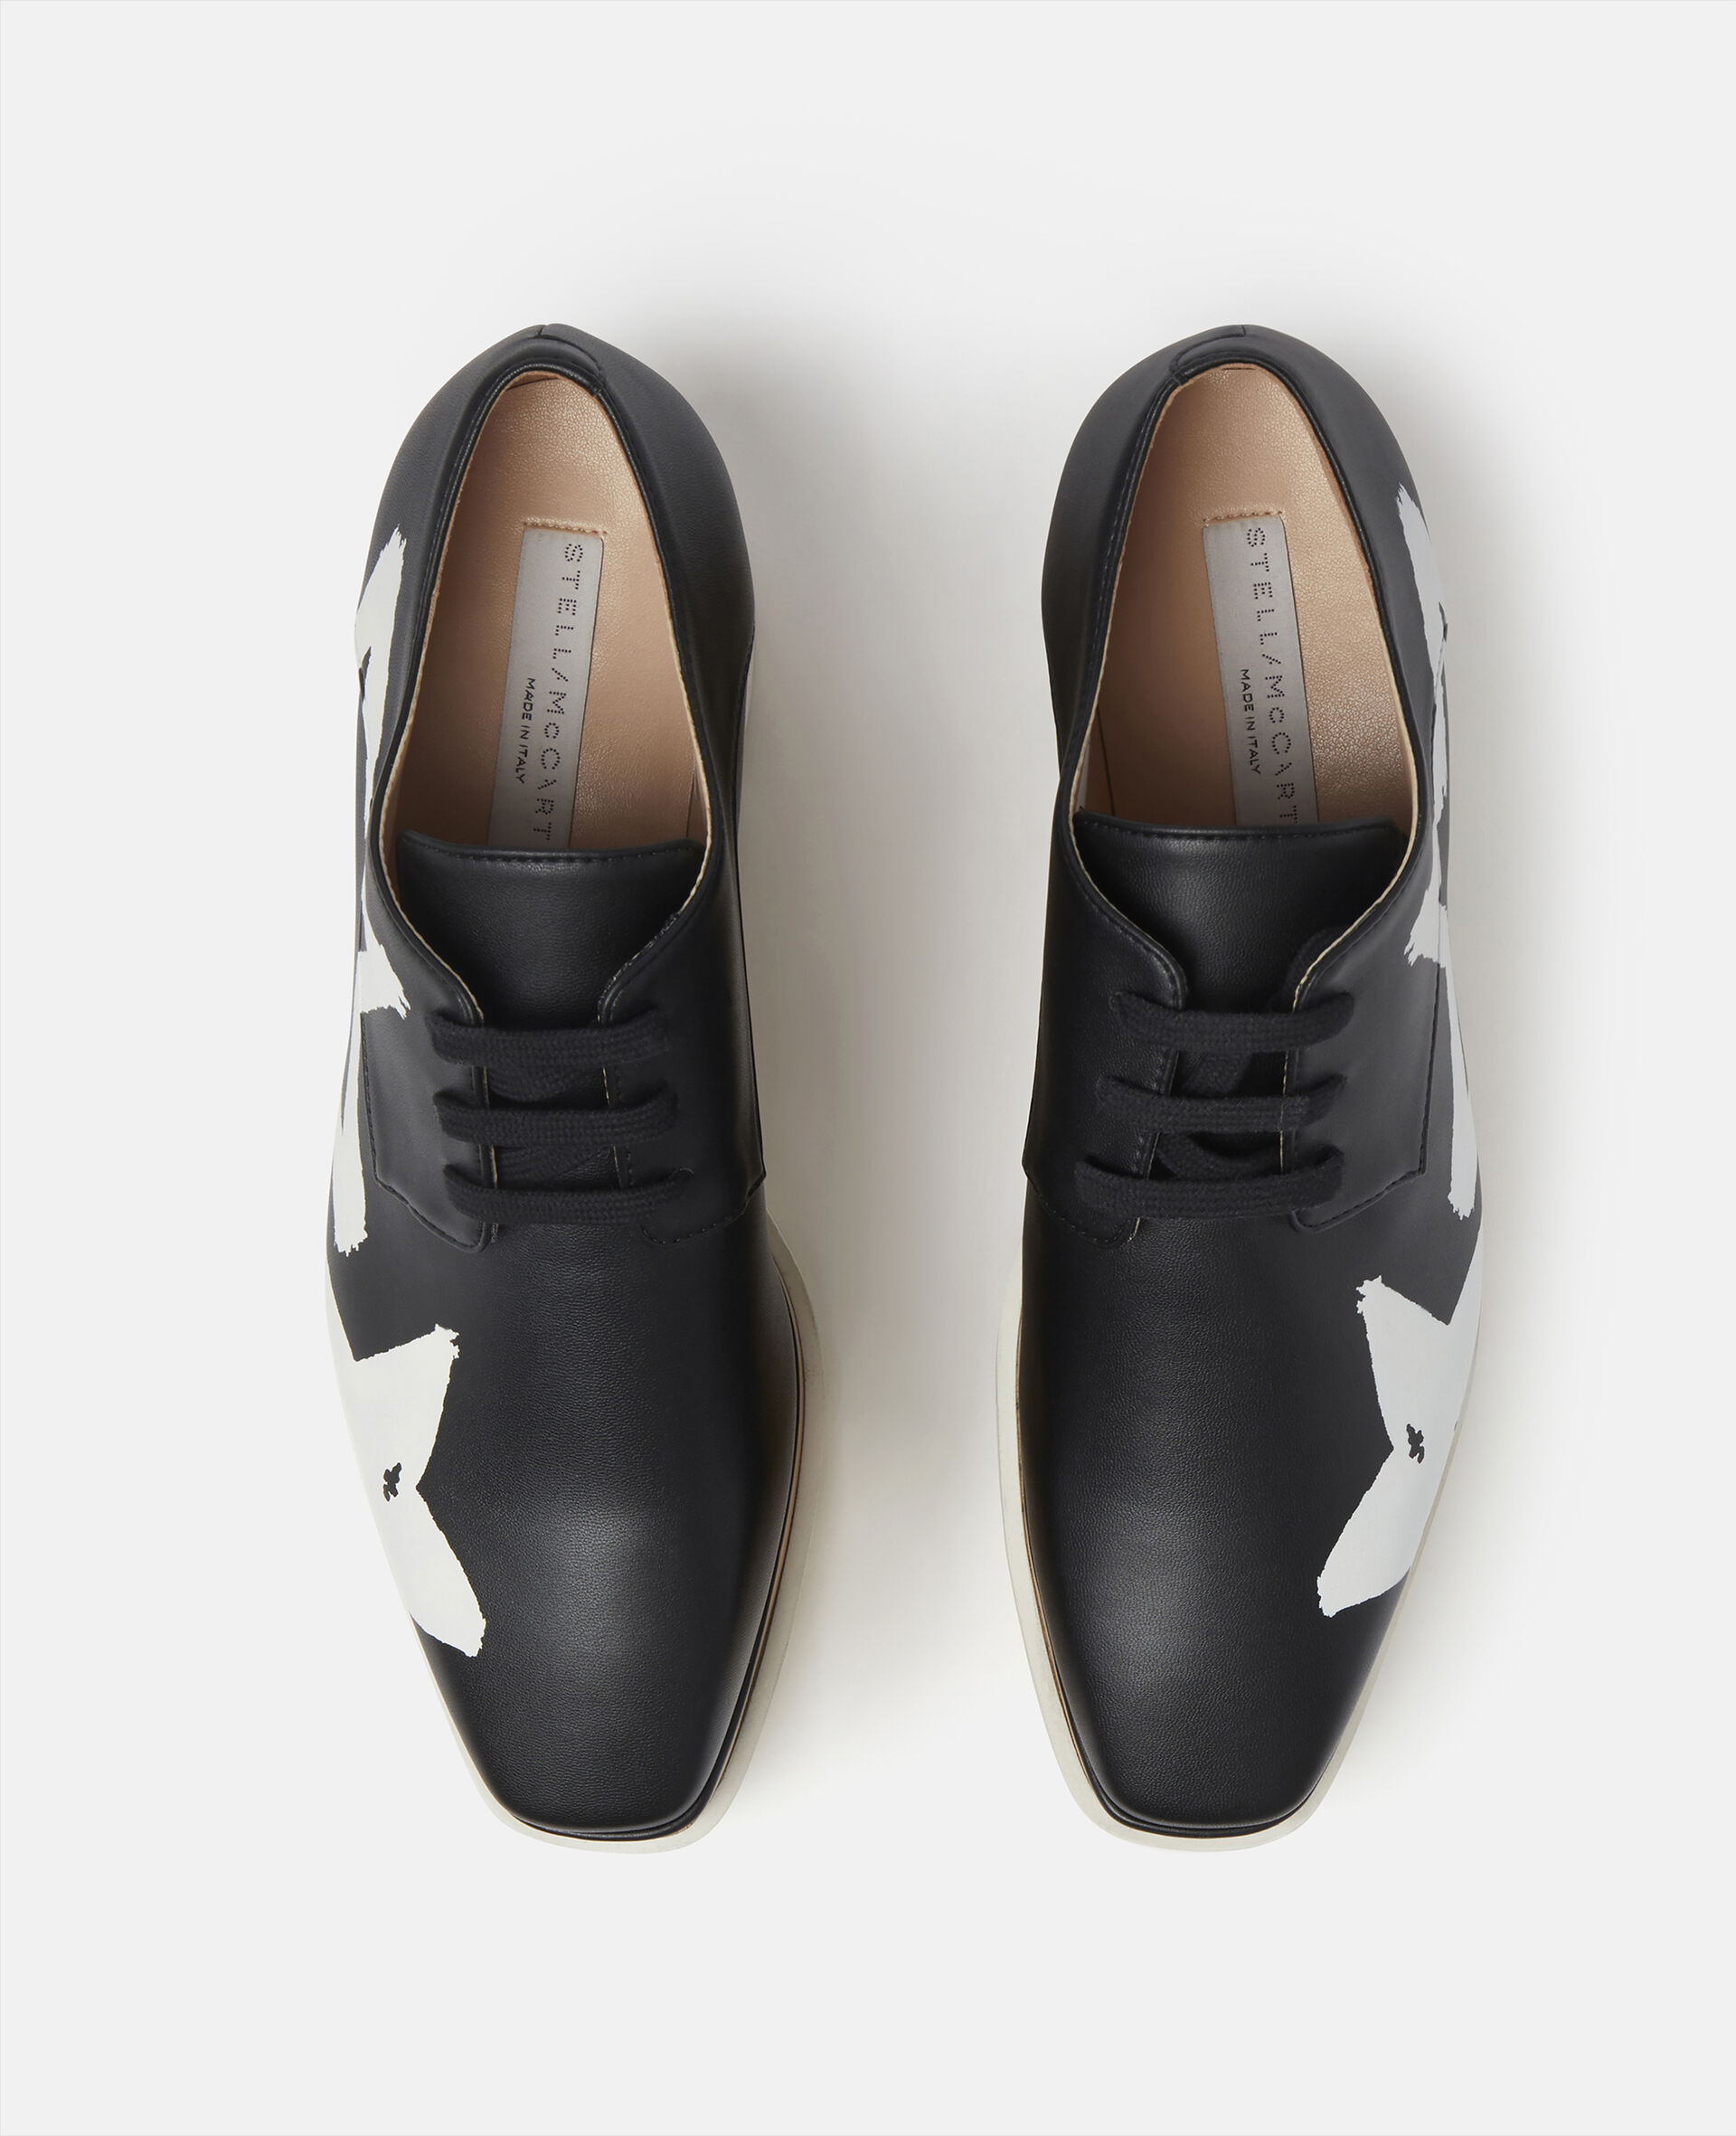 Chaussures compensees Elyse avec etoiles peintes-Noir-large image number 3